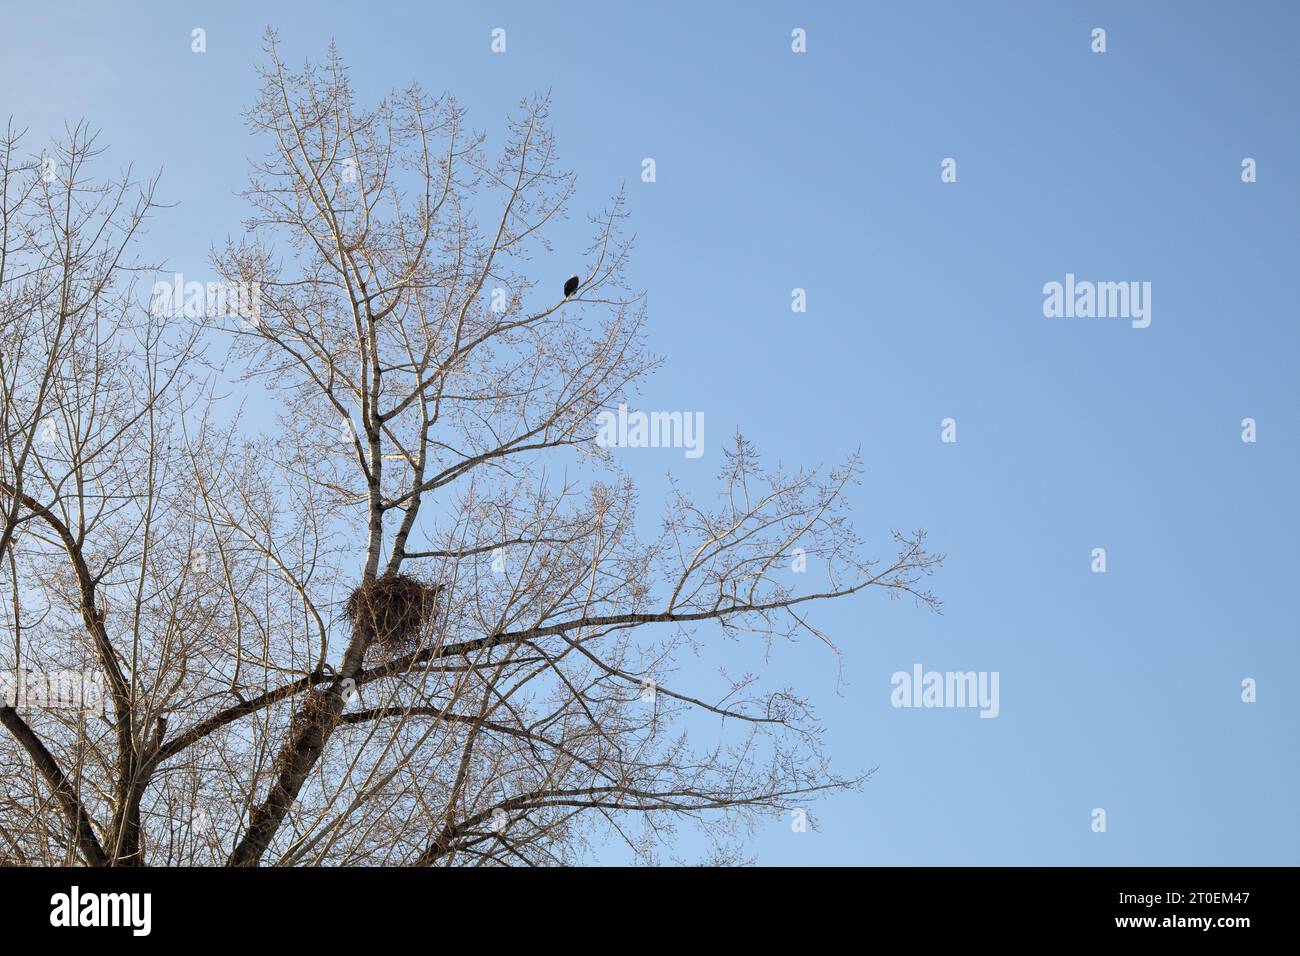 Weißkopfseeadler mit Adlernest im Baum an einem Wintertag mit blauem Himmel. Großes Nest aus Zweigen in hohem Baum ohne Blätter mit einem Adler auf dem To Stockfoto